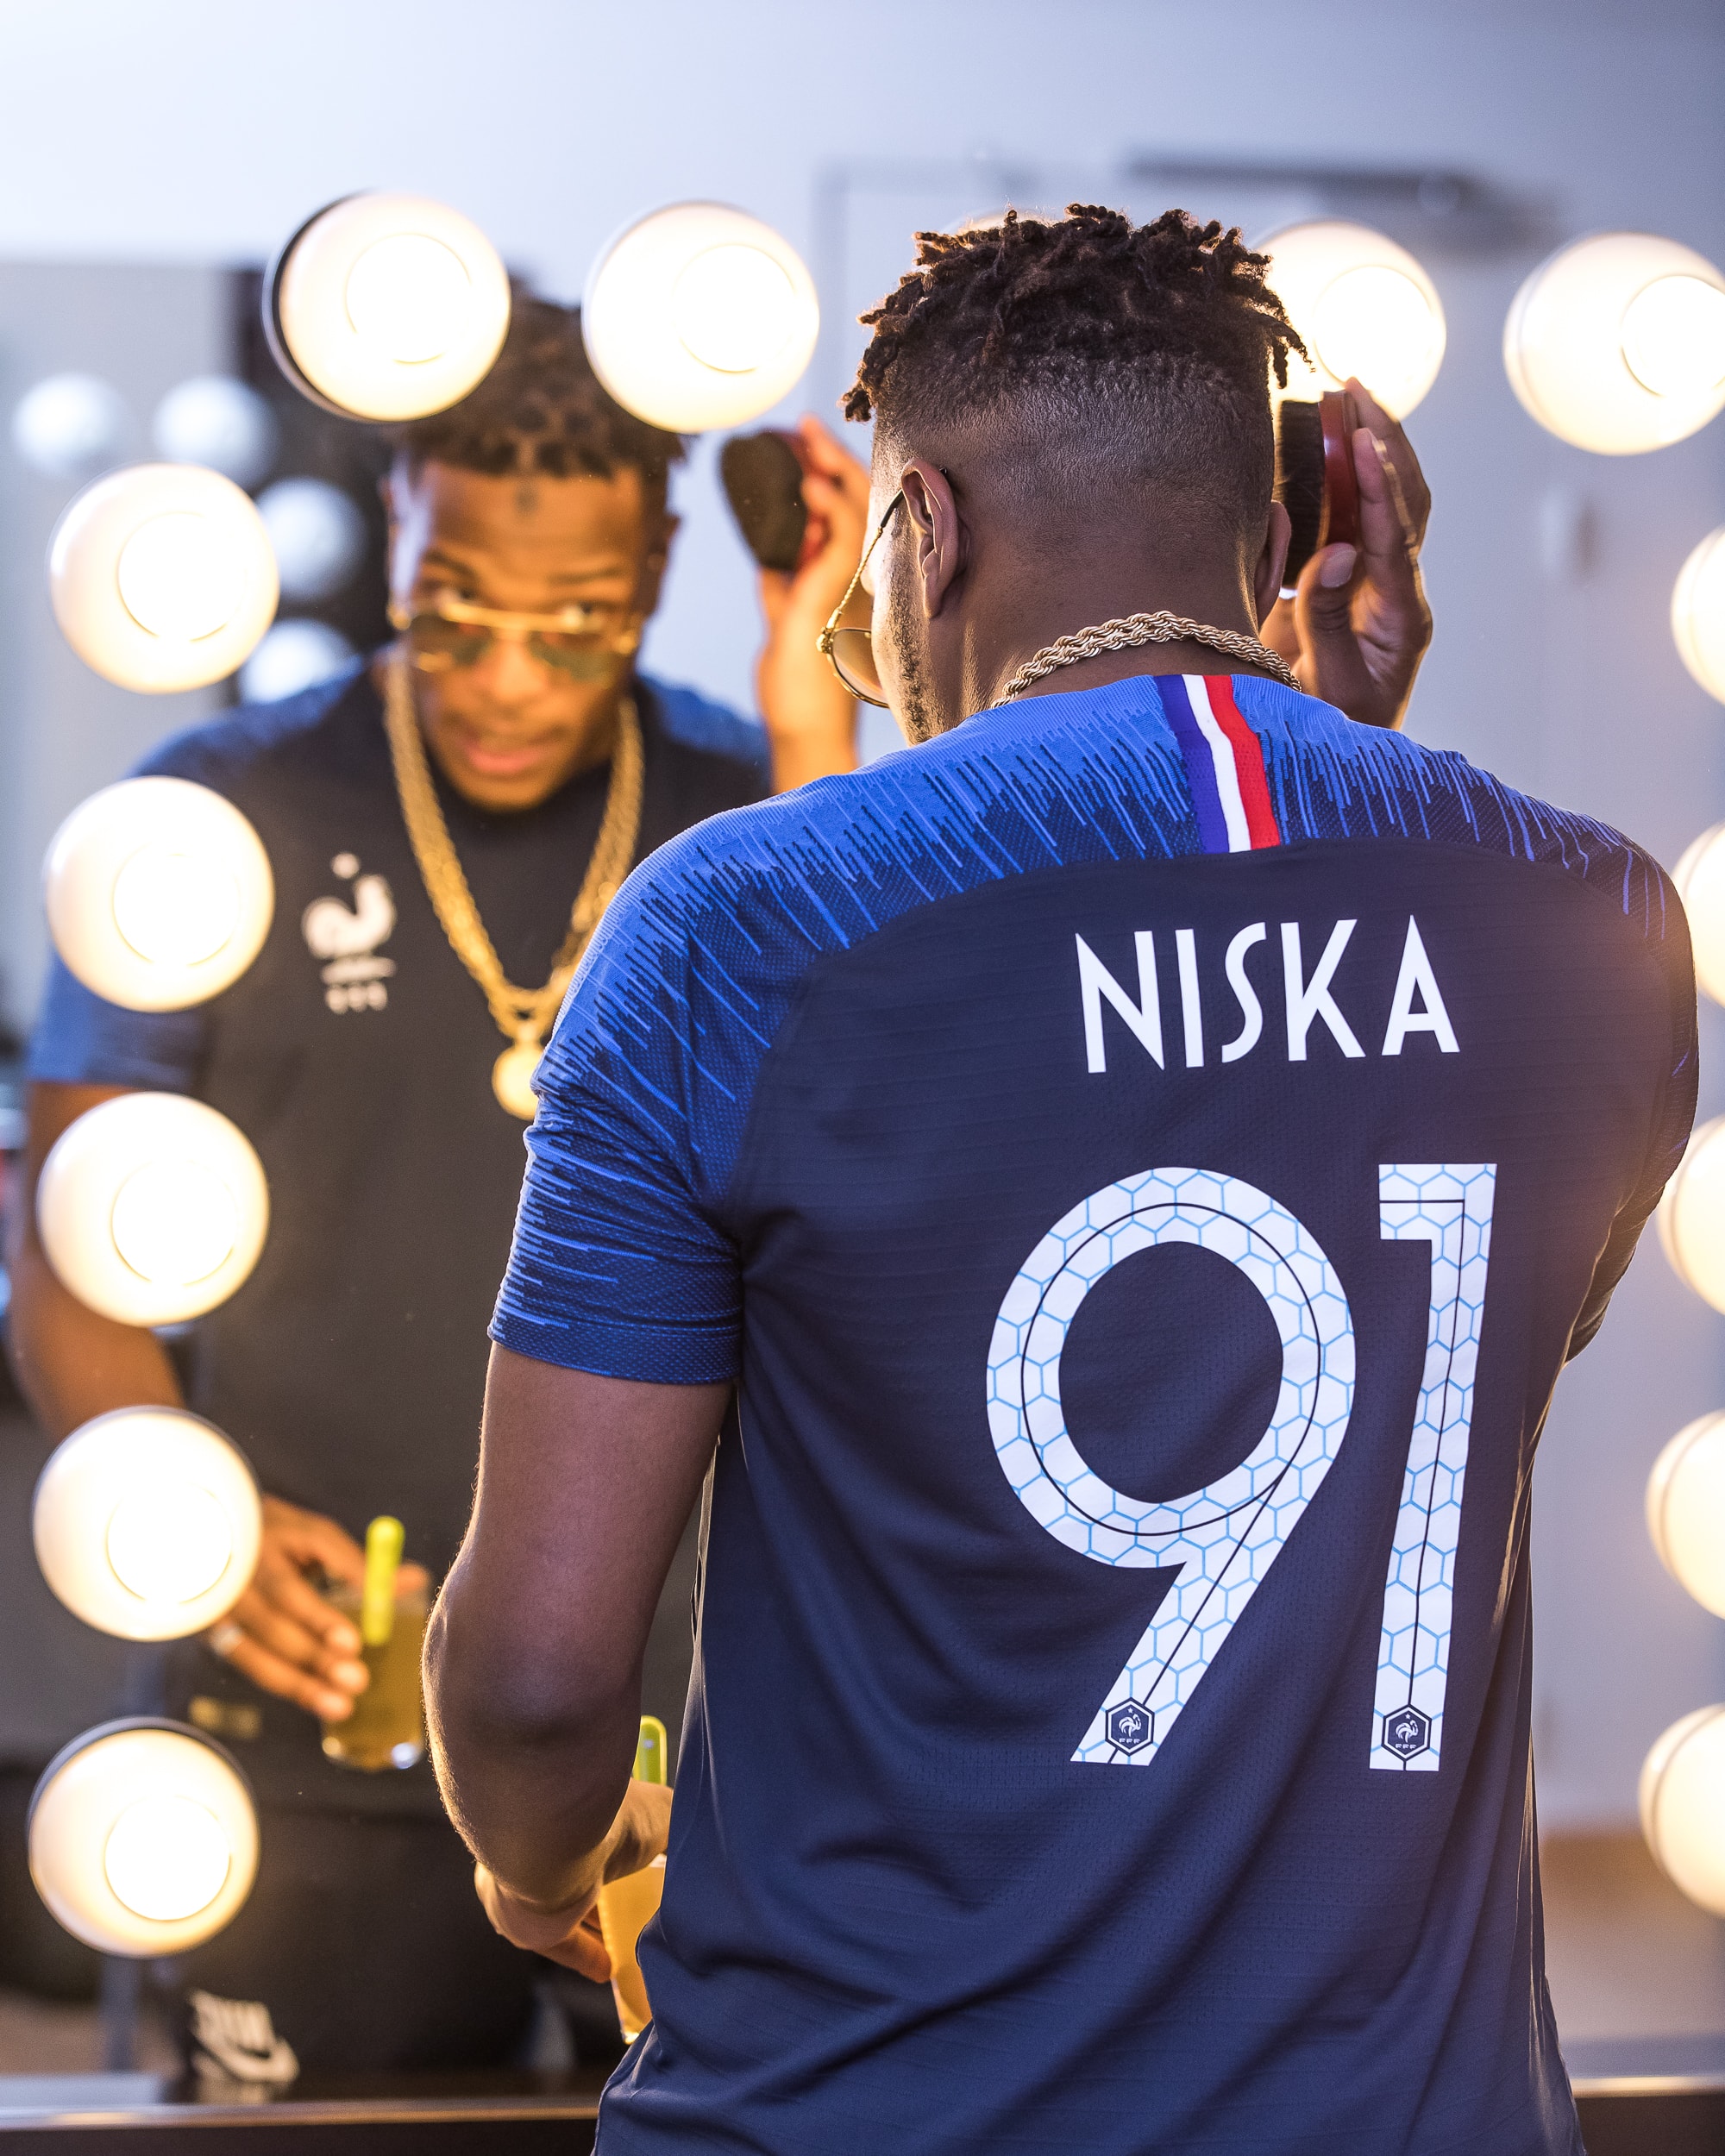 Coupe Du Monde Mondial Russie 2018 Football FIFA Niska Nantes Exclusivité Nike Concert